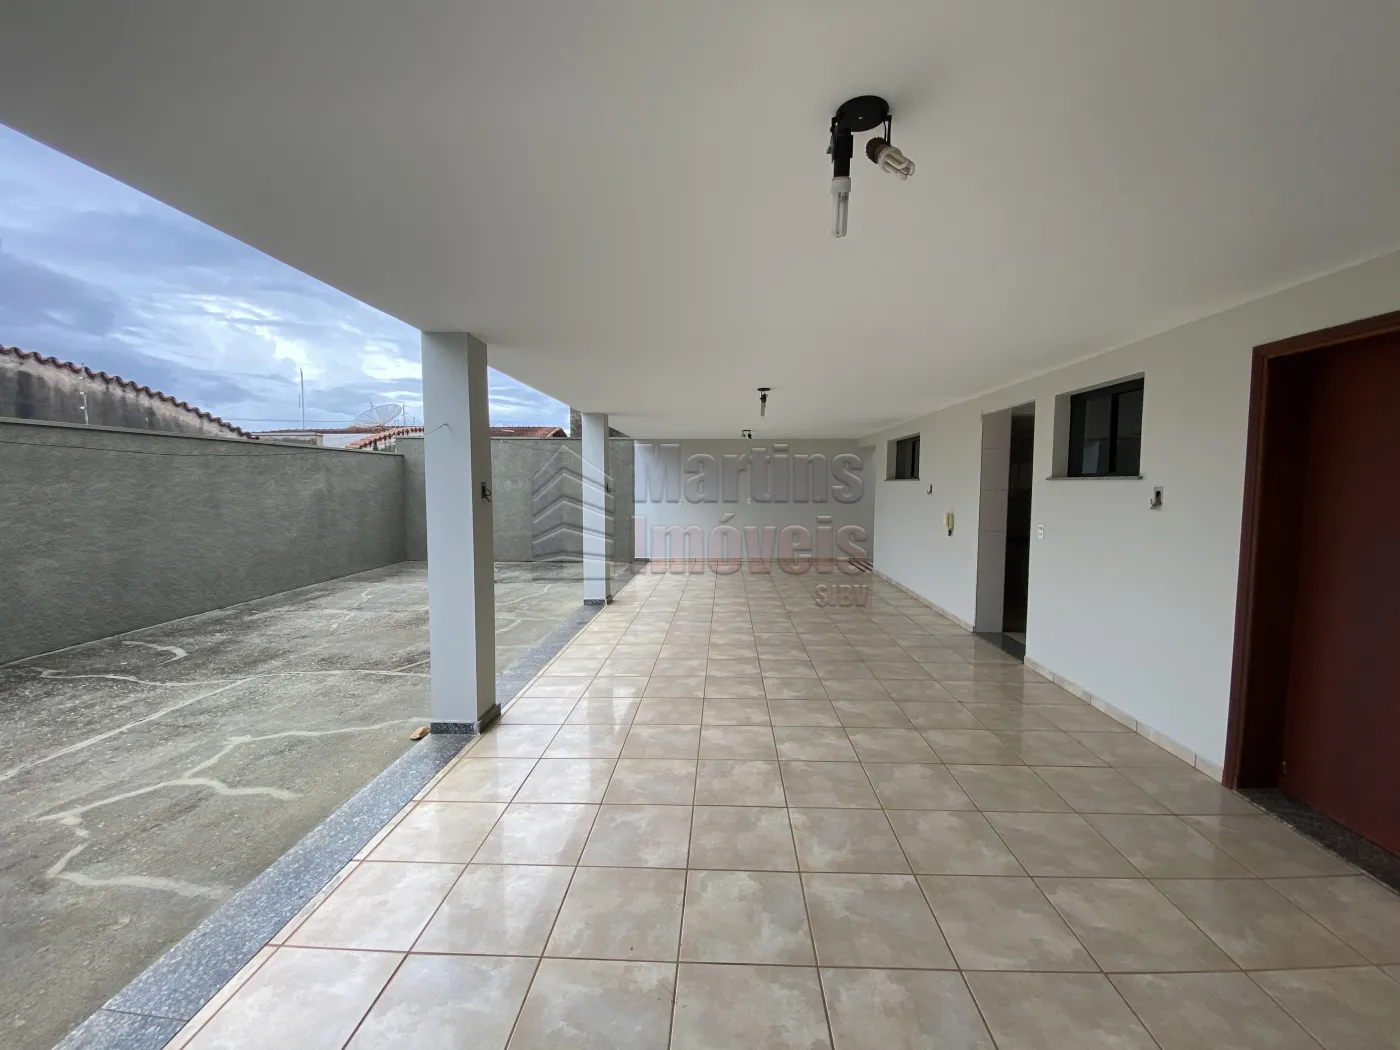 Comprar Casa / Padrão em São João da Boa Vista R$ 750.000,00 - Foto 15